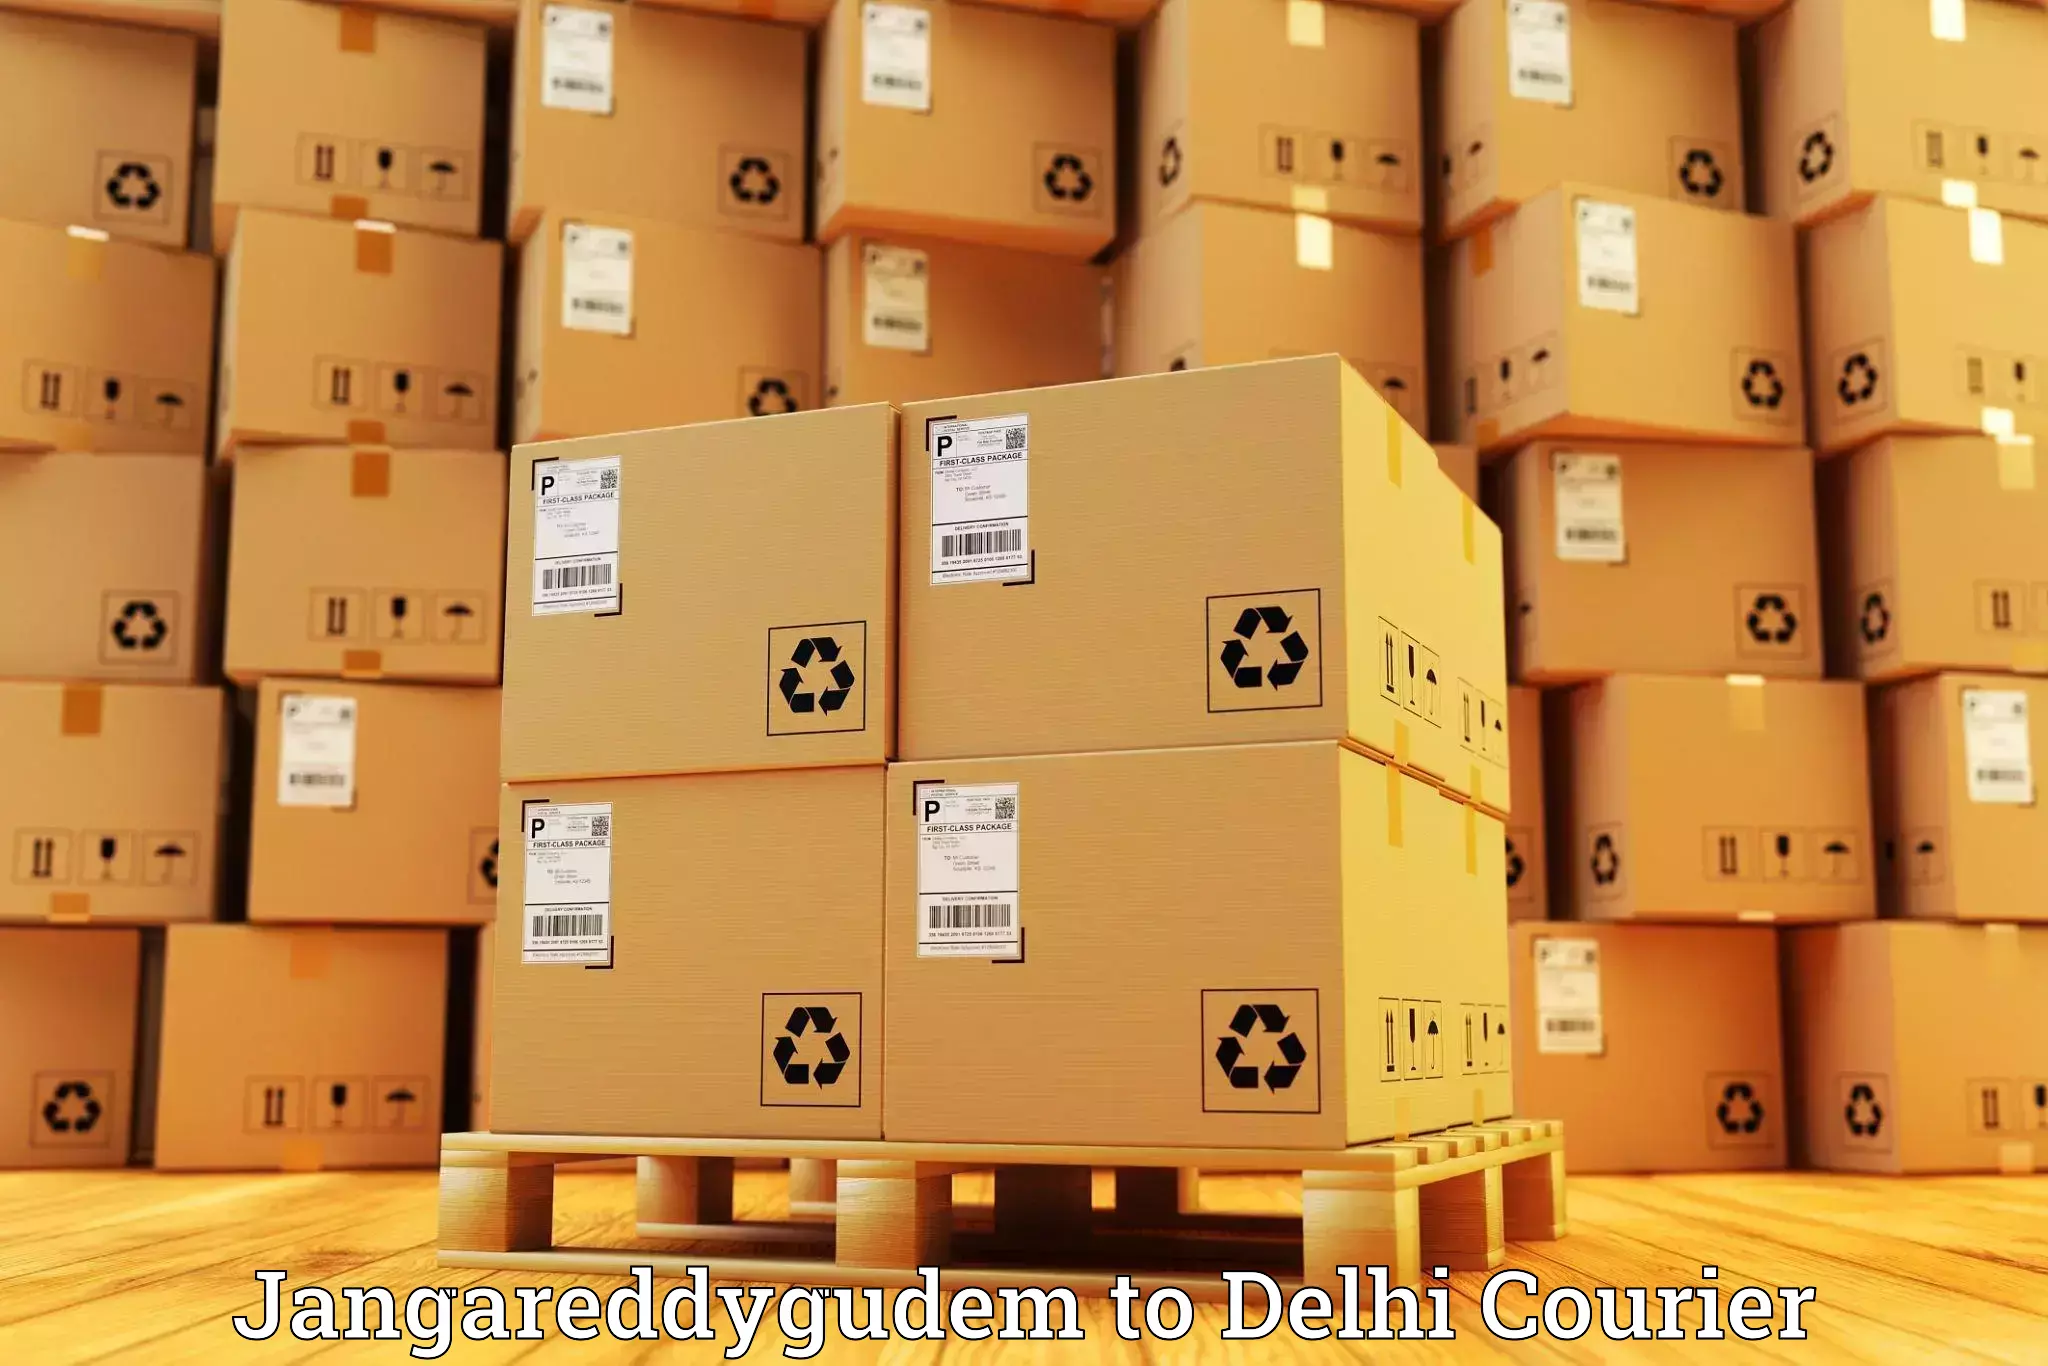 Customized shipping options Jangareddygudem to NIT Delhi